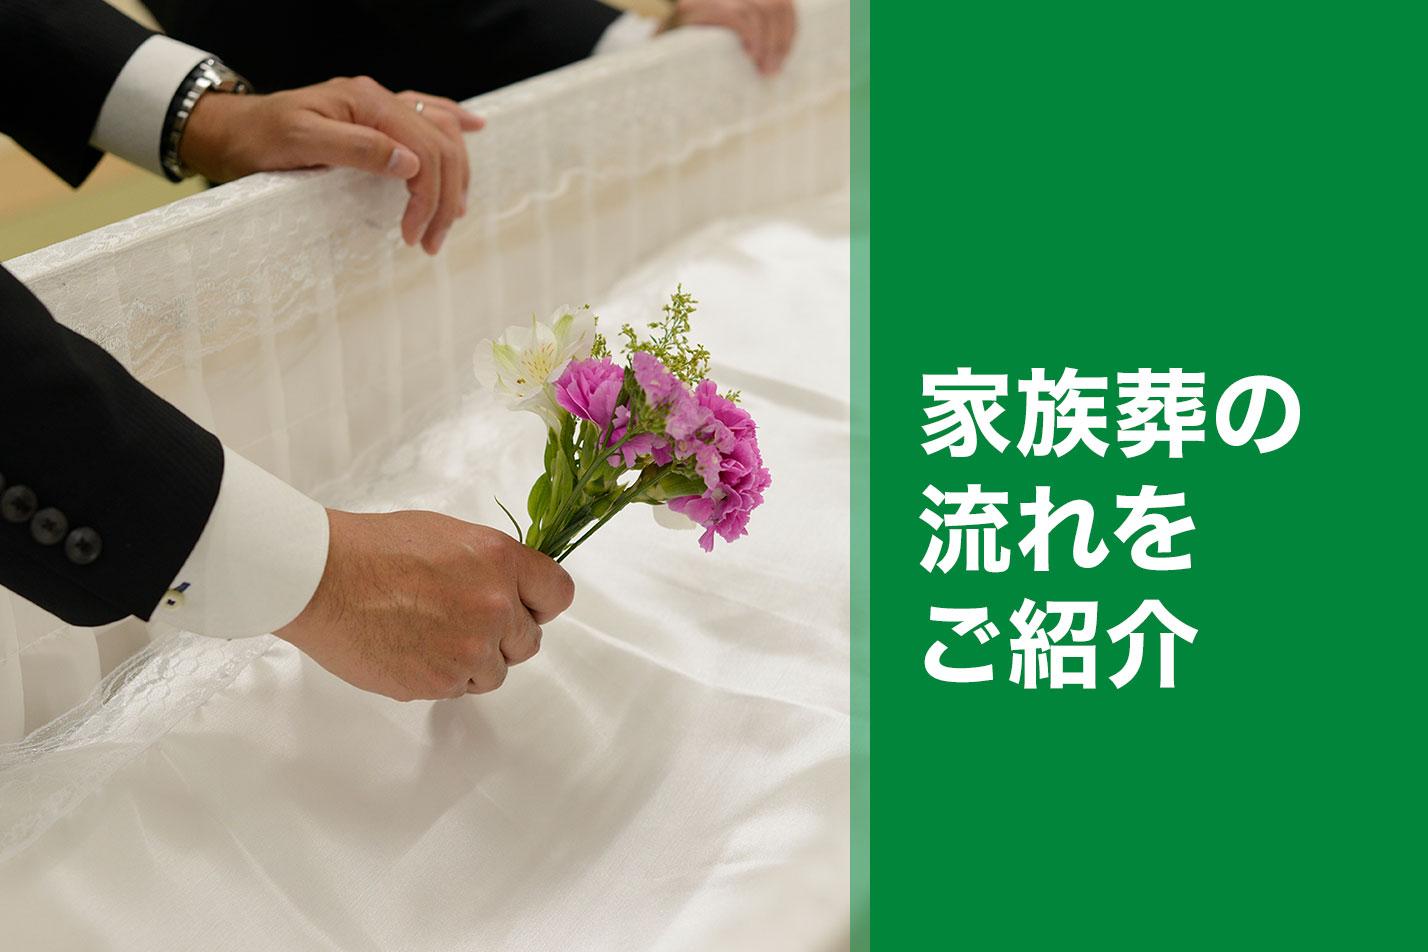  所沢市における家族葬の流れとは？のイメージ画像